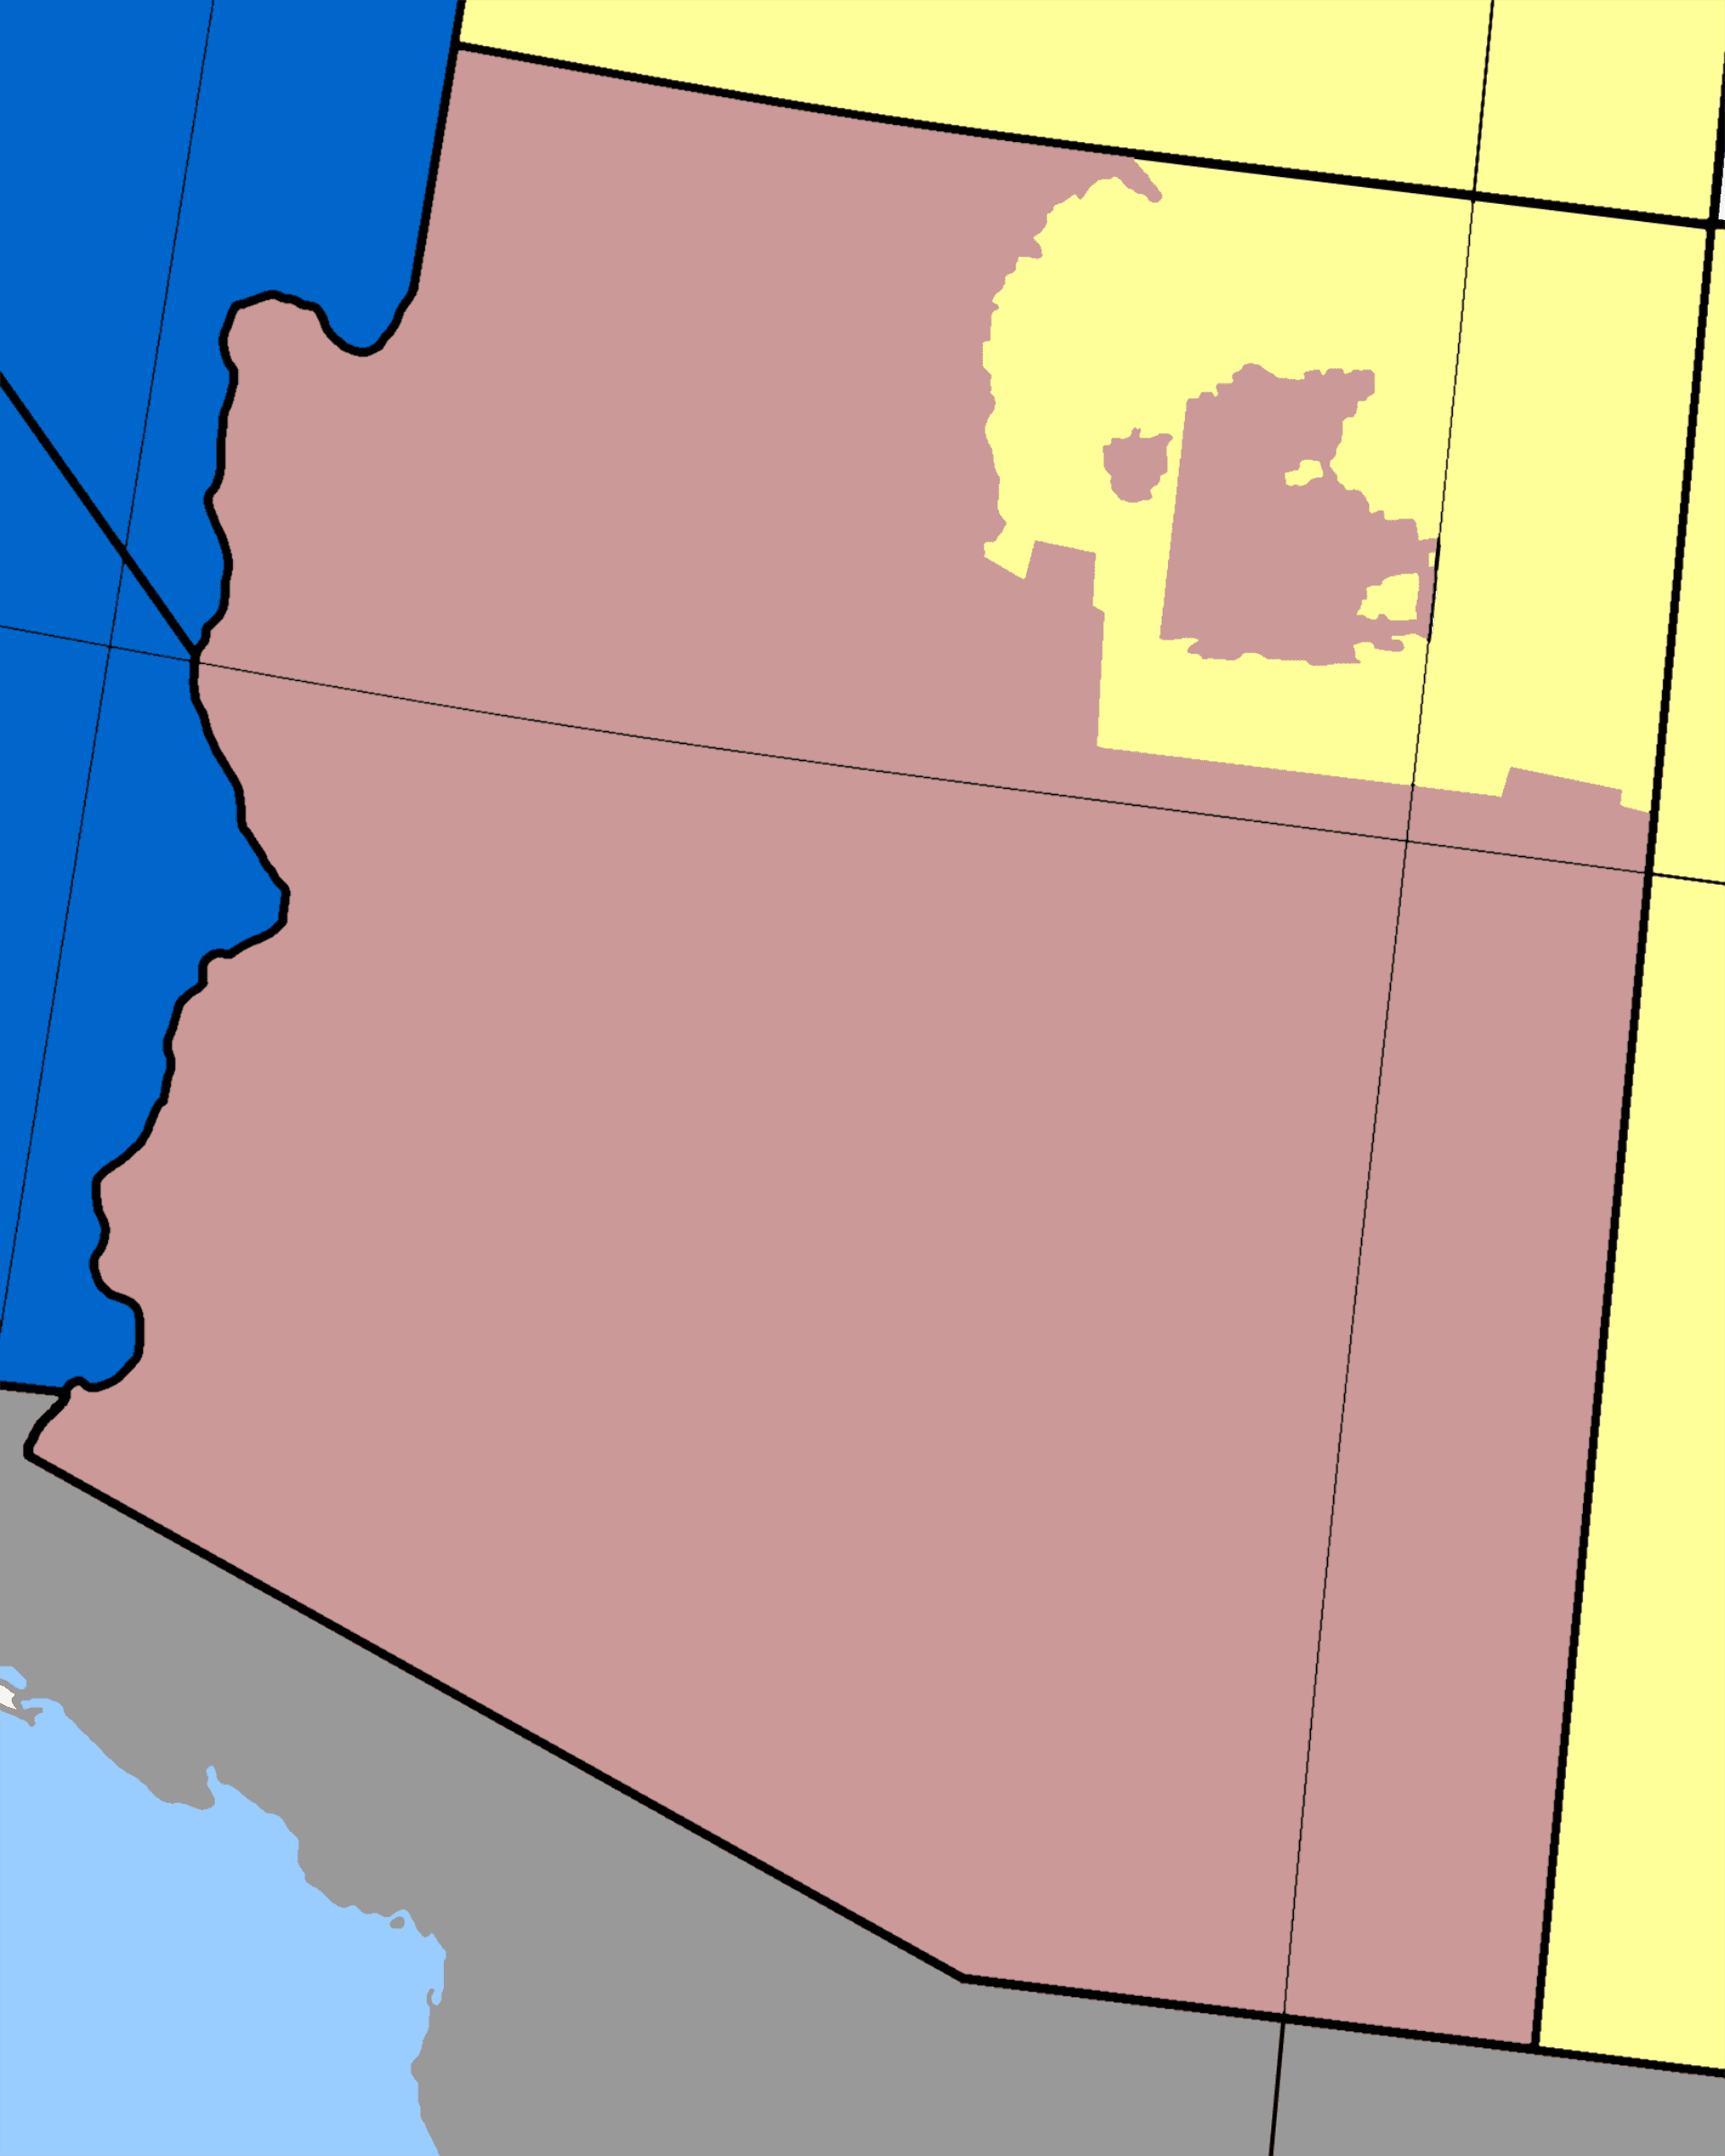 Mapa stanu Arizona w USA z zaznaczonymi jego strefami czasowymi